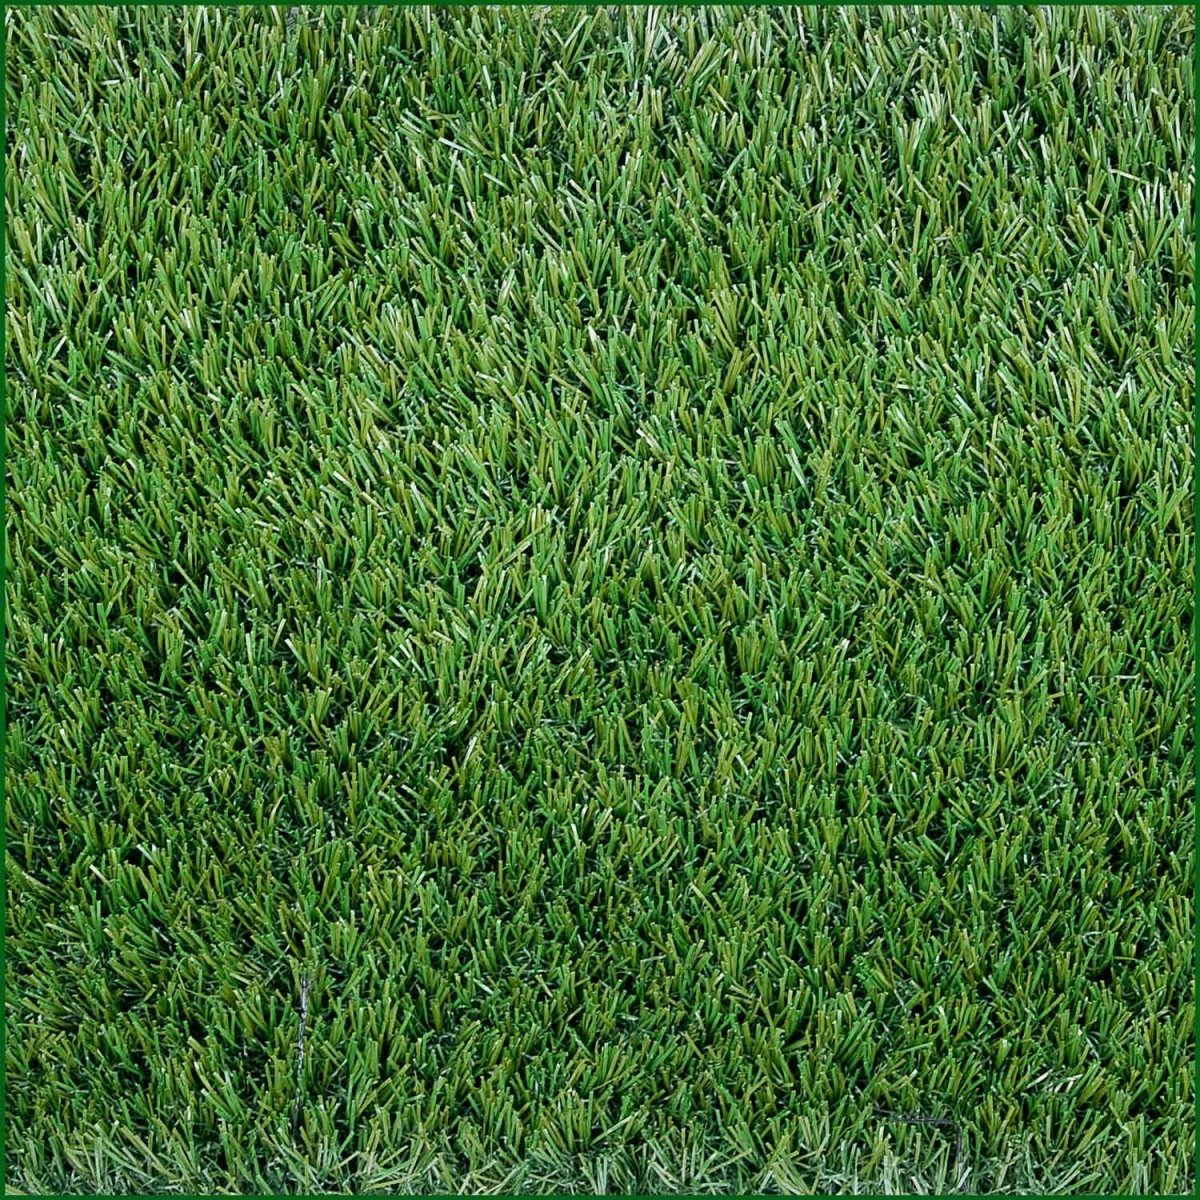 фото травы вид сверху